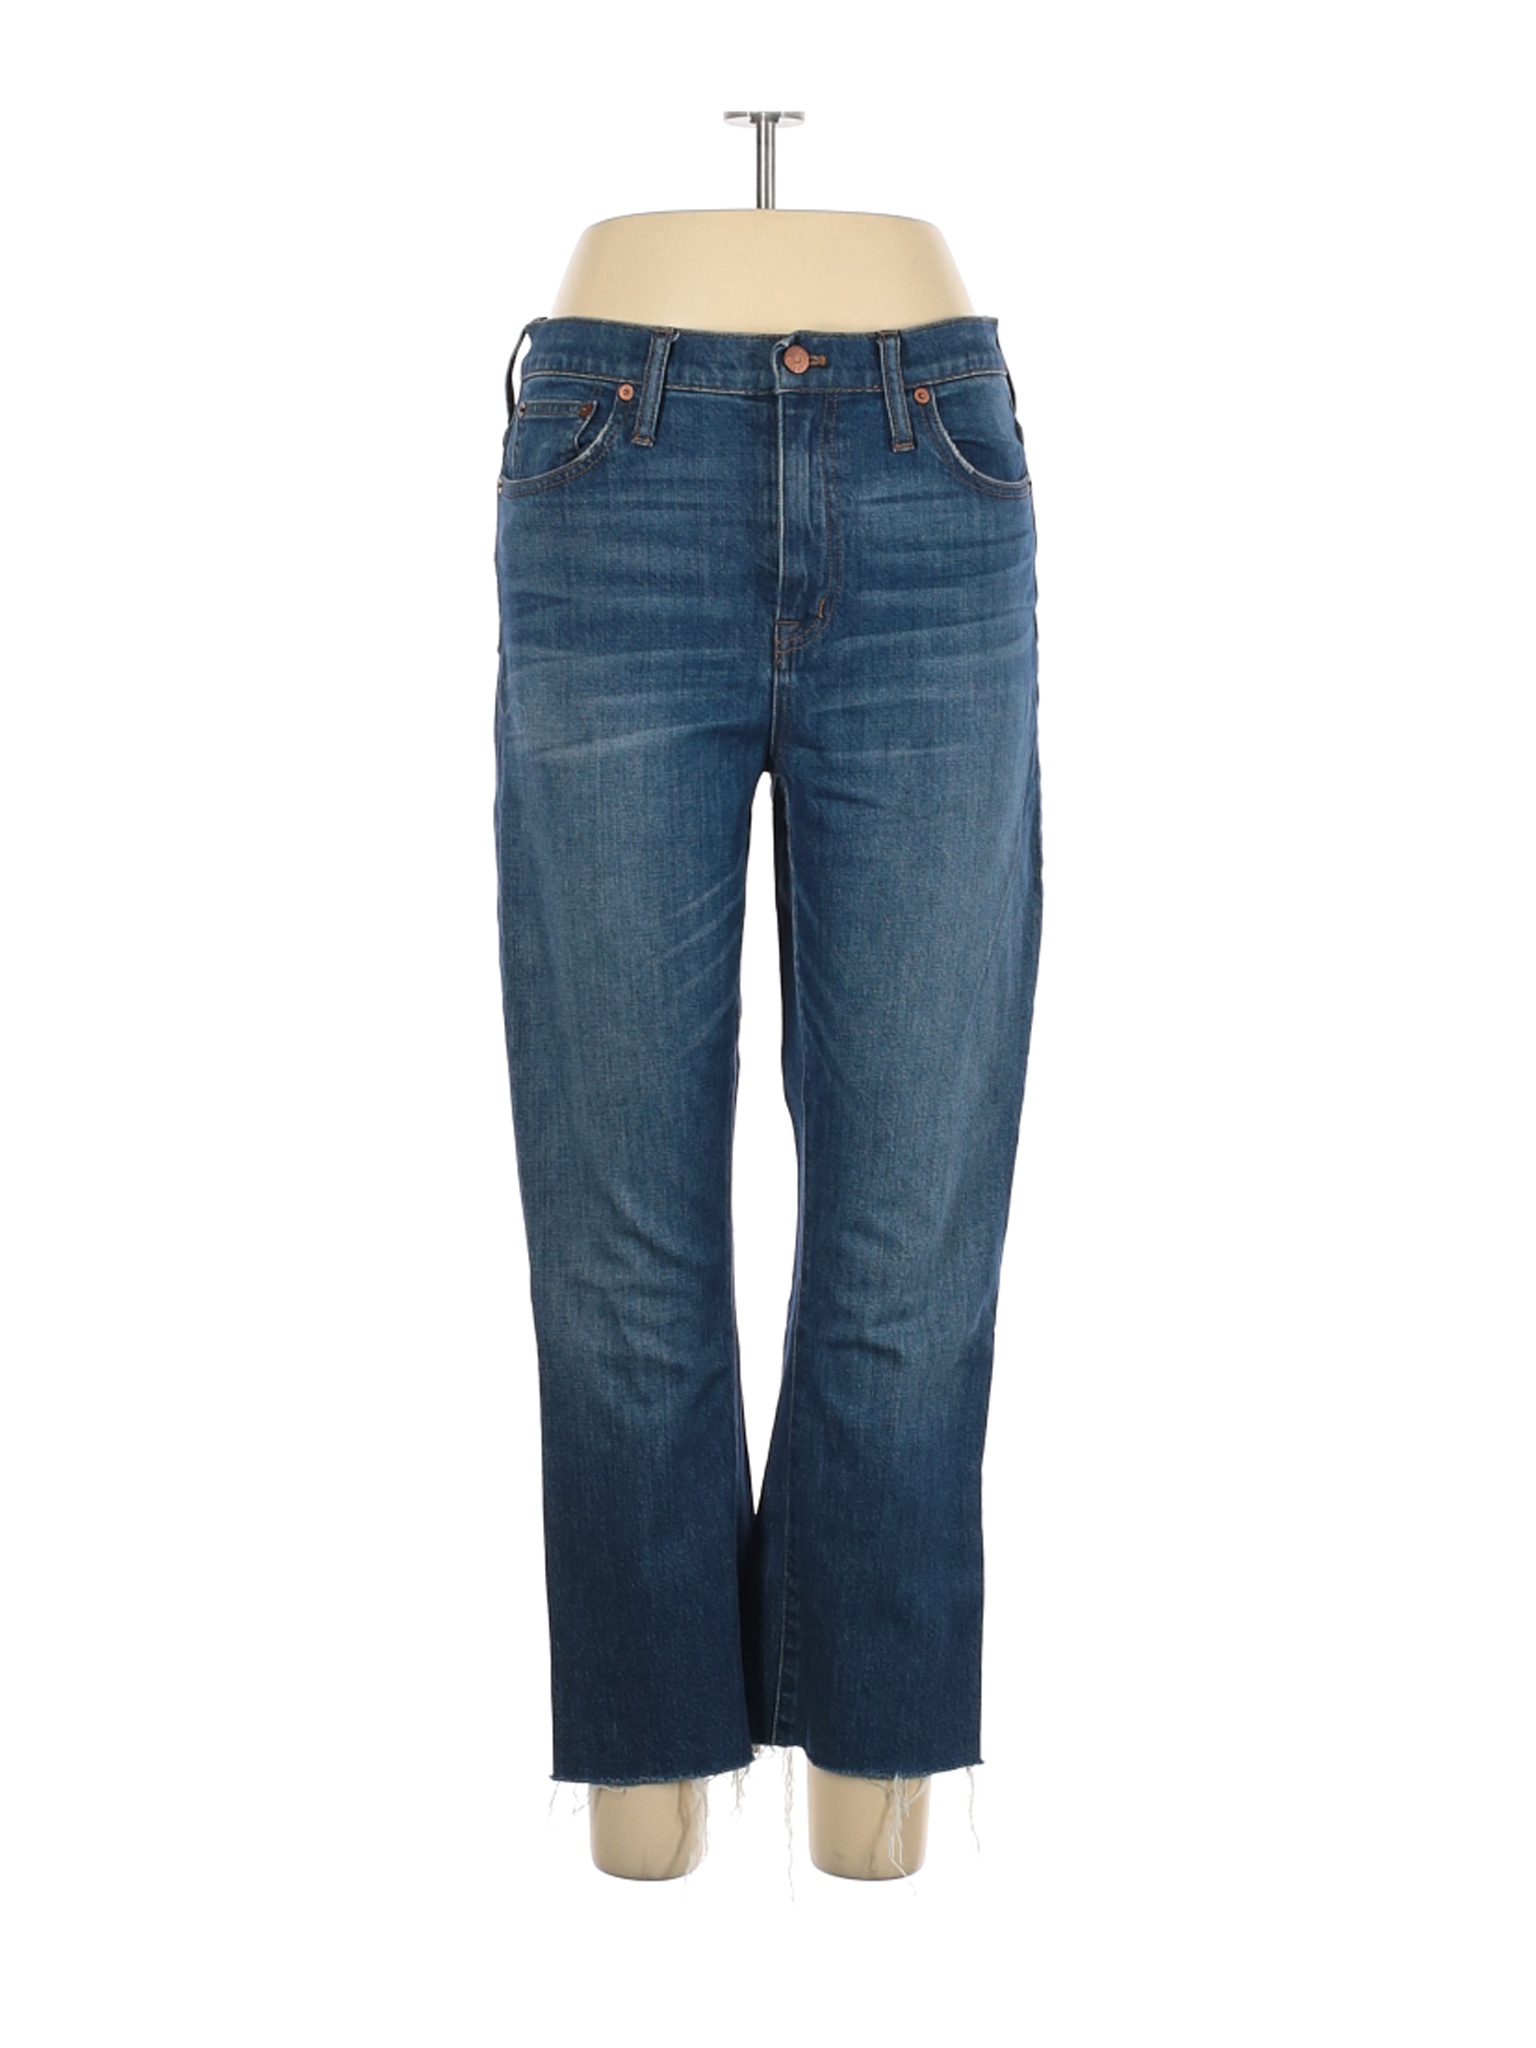 Madewell Women Blue Jeans 31W | eBay